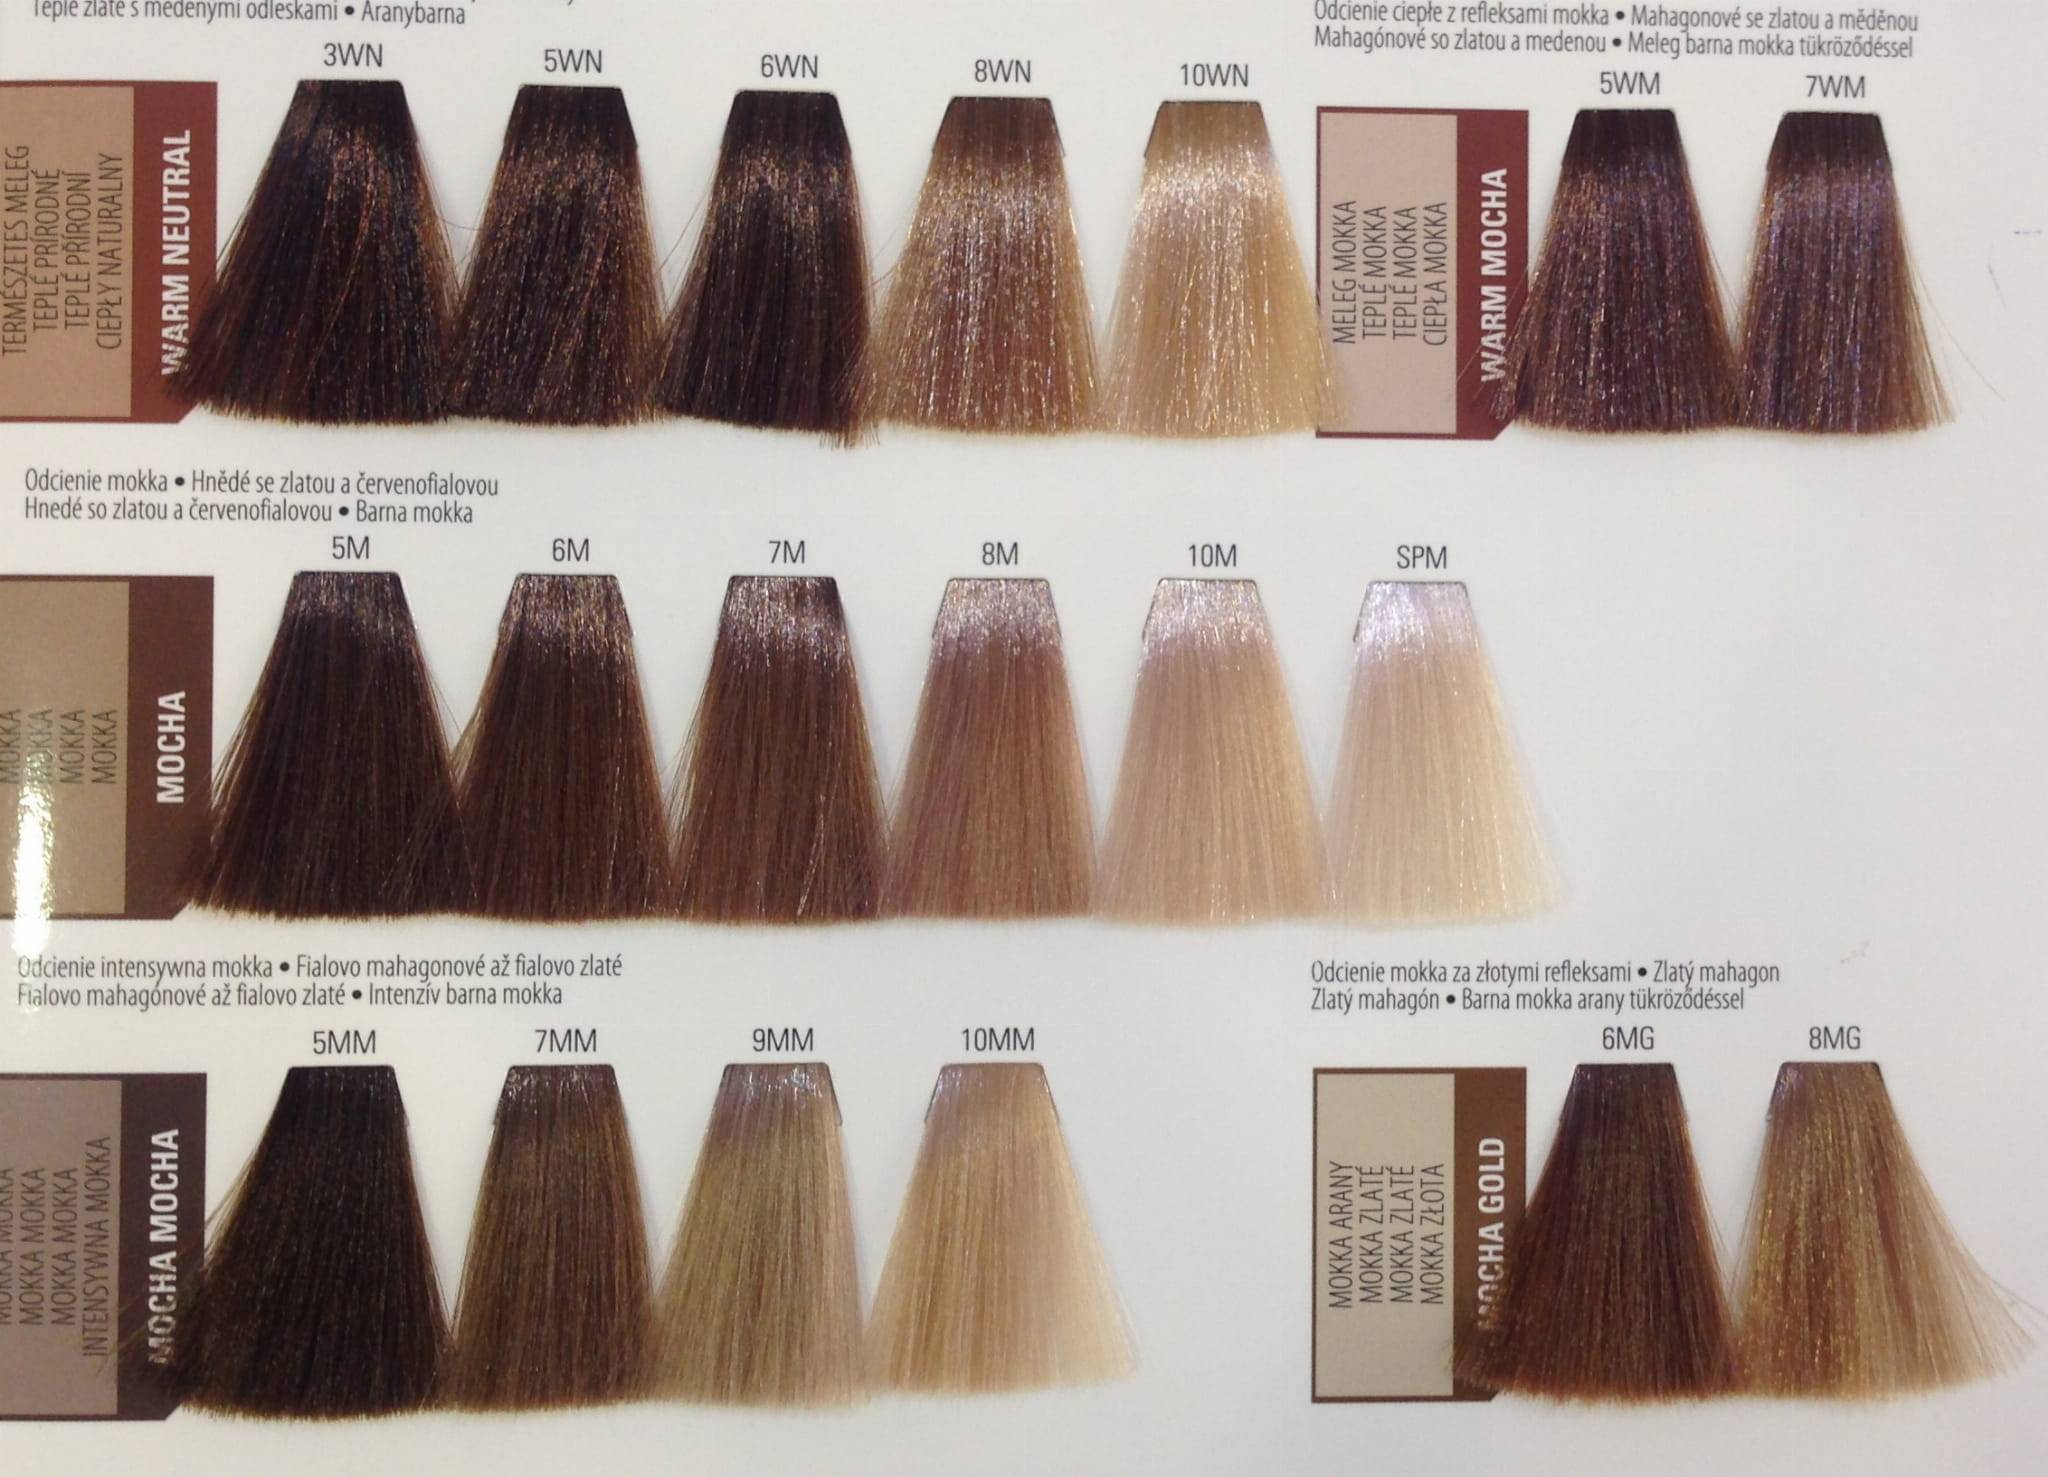 Все о красках matrix для тонирования волос: плюсы и минусы, палитра, стойкость, рекомендации по использованию